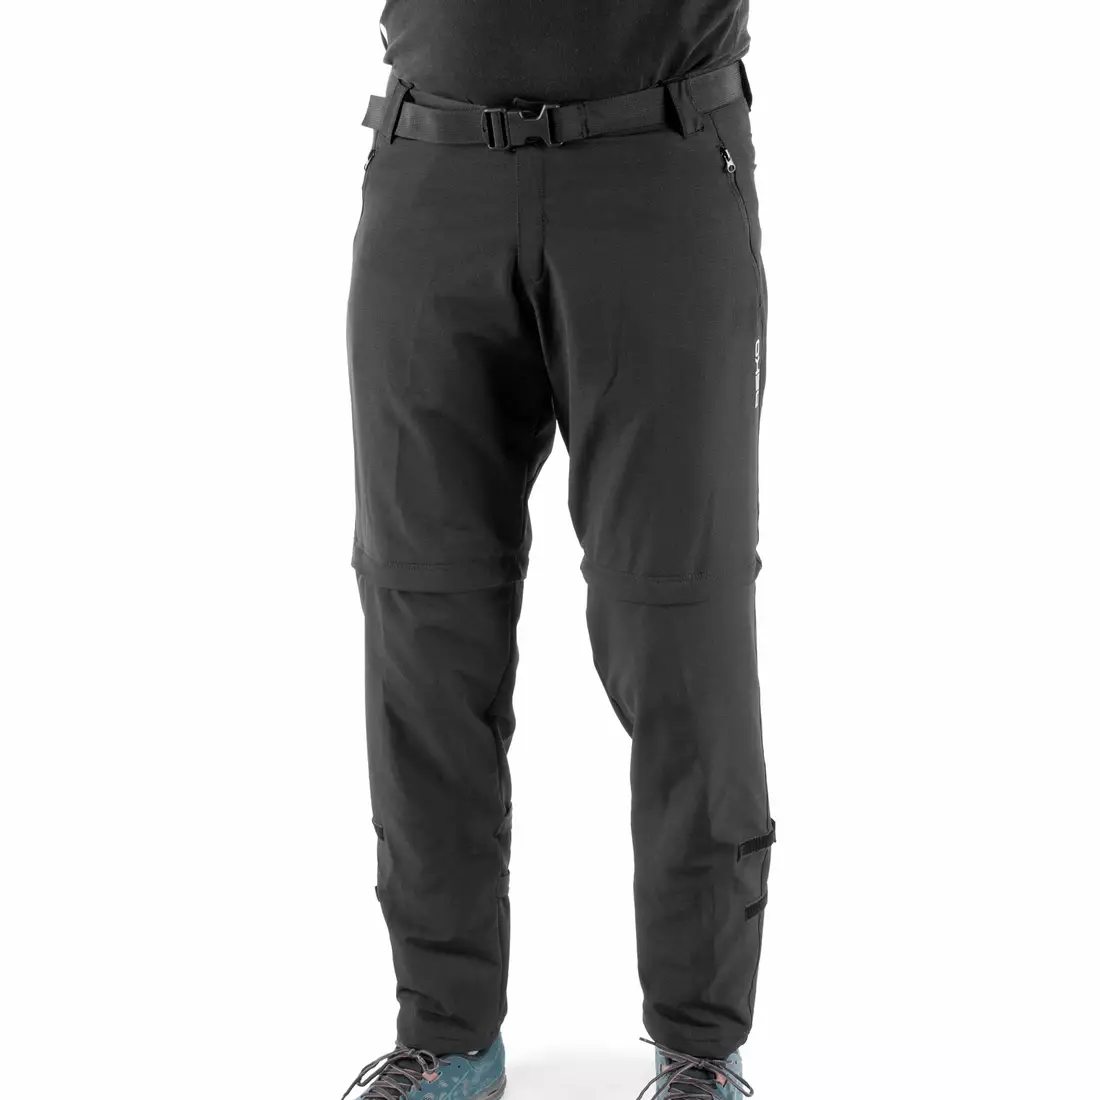 DEKO STR-M-001 pánske cyklistické nohavice s odopínateľnými nohami, čierne